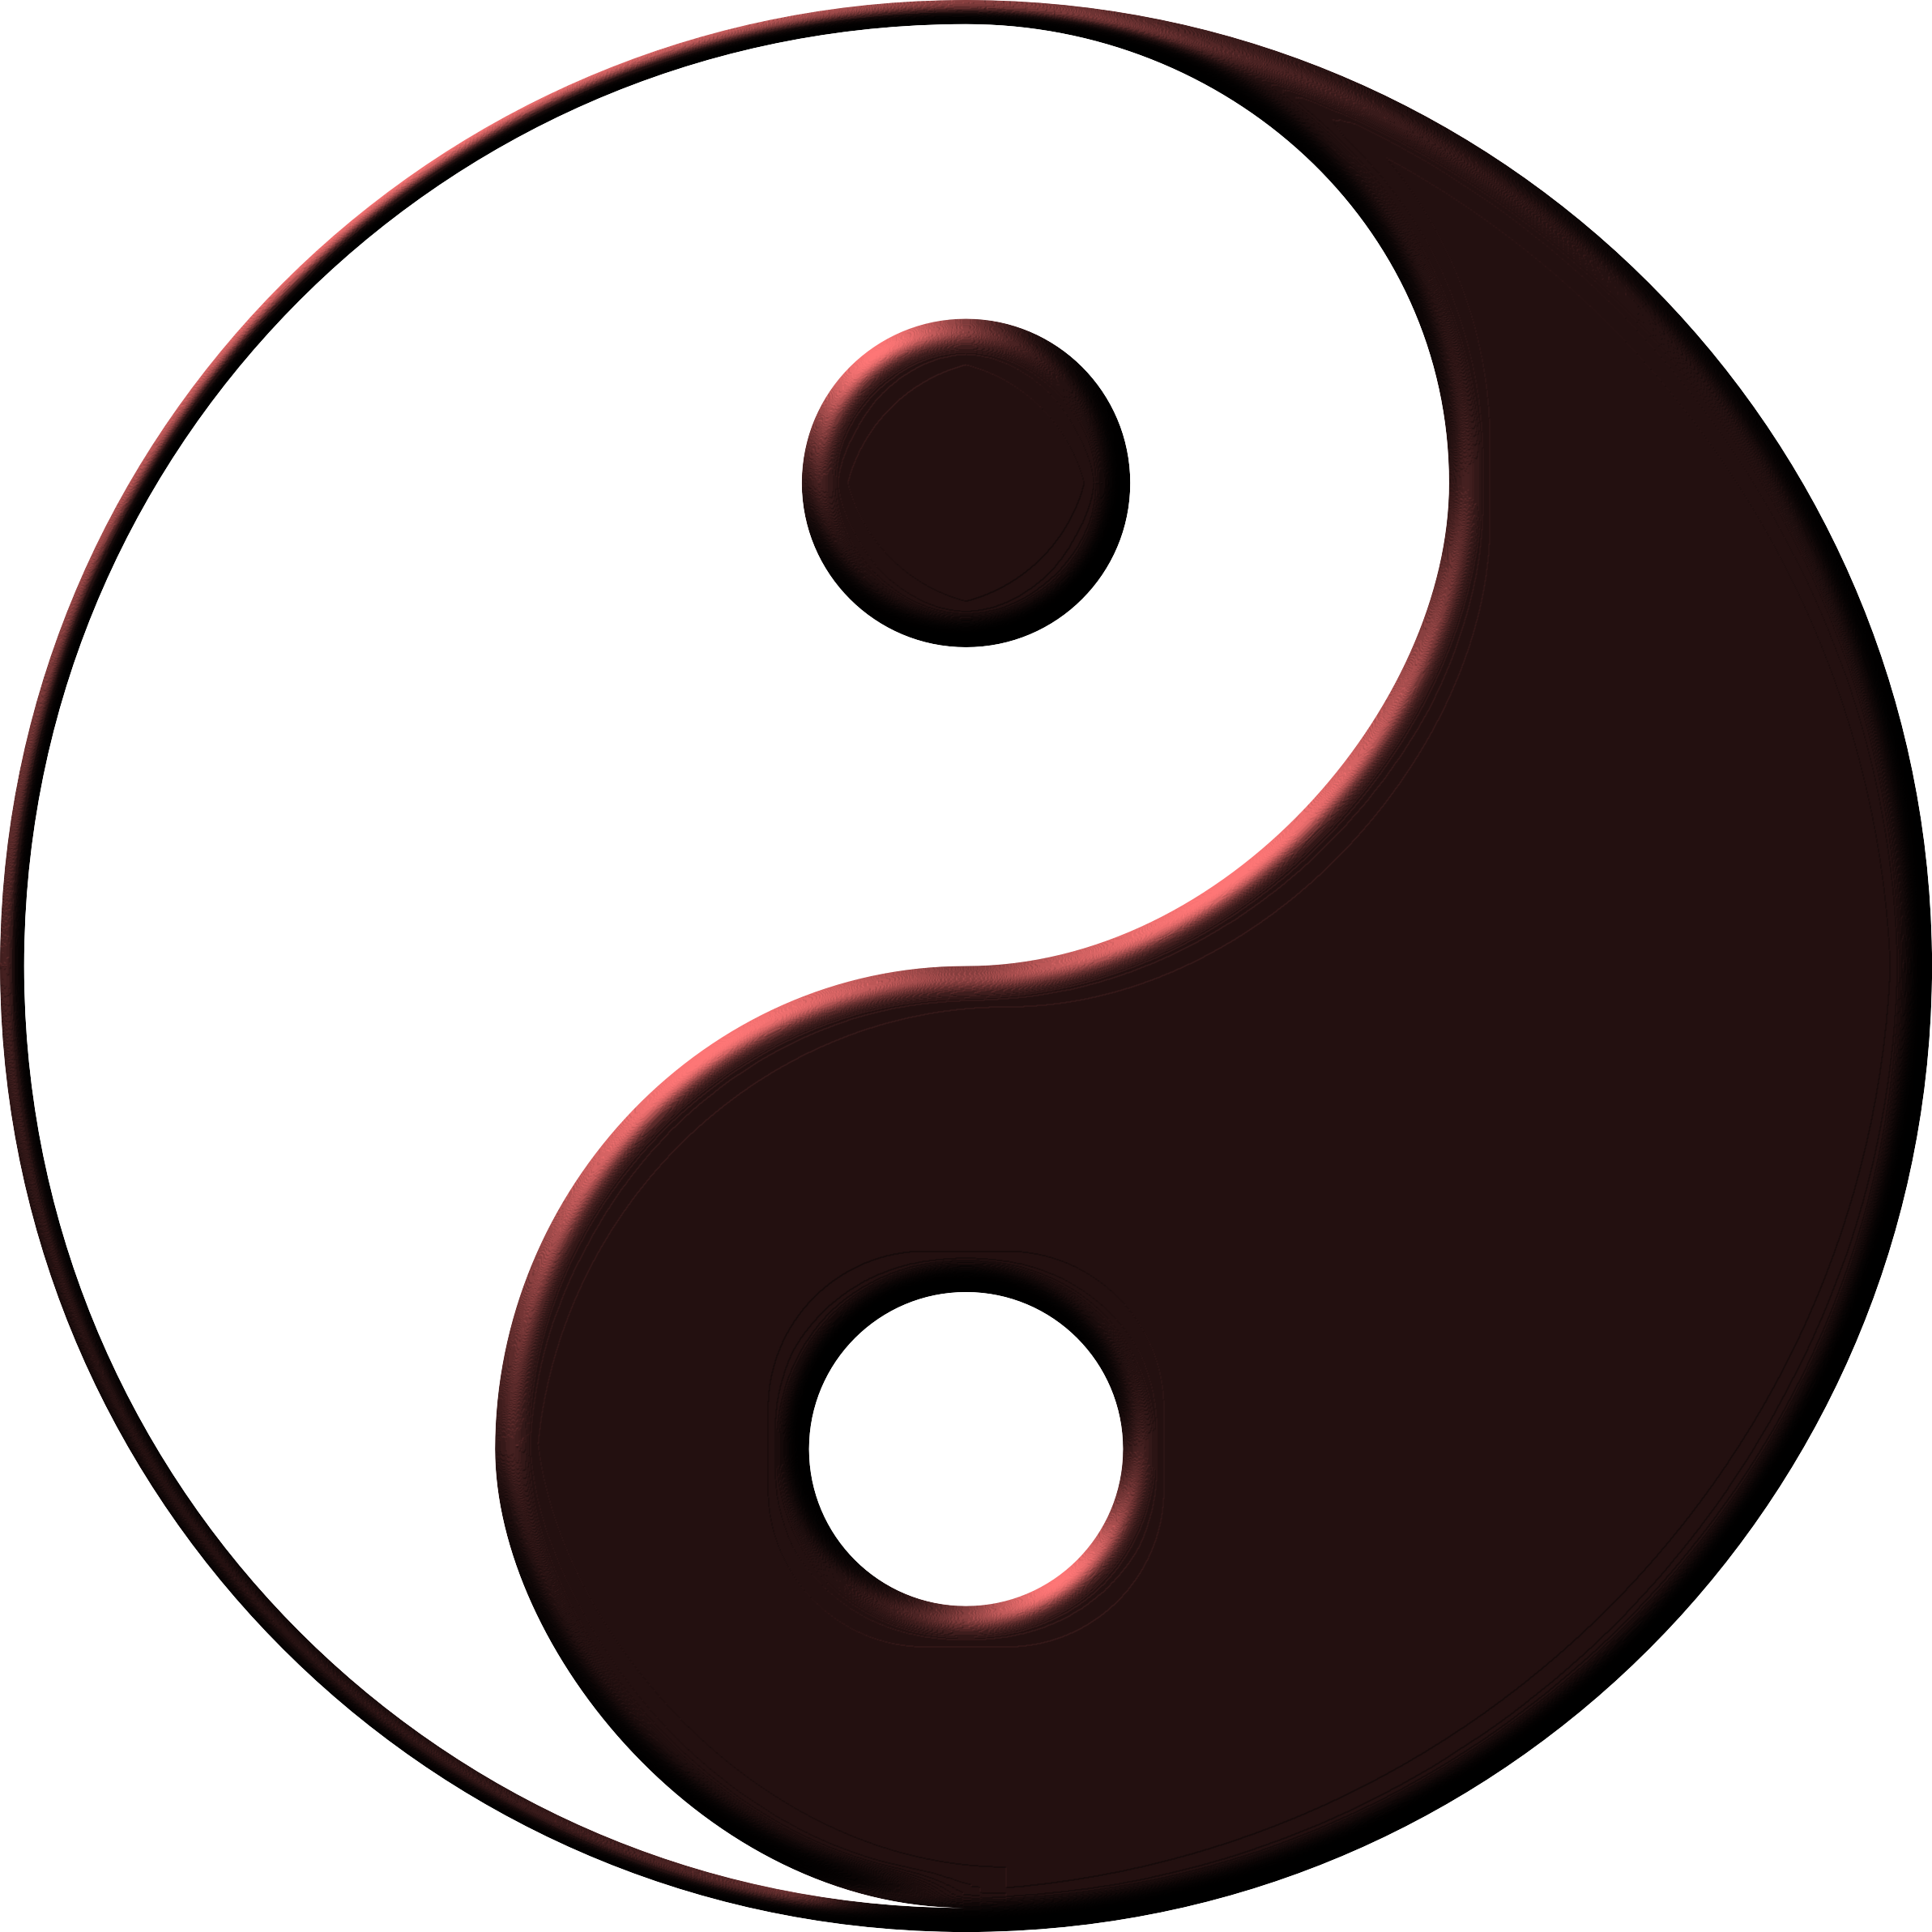 meditation clipart ying yang